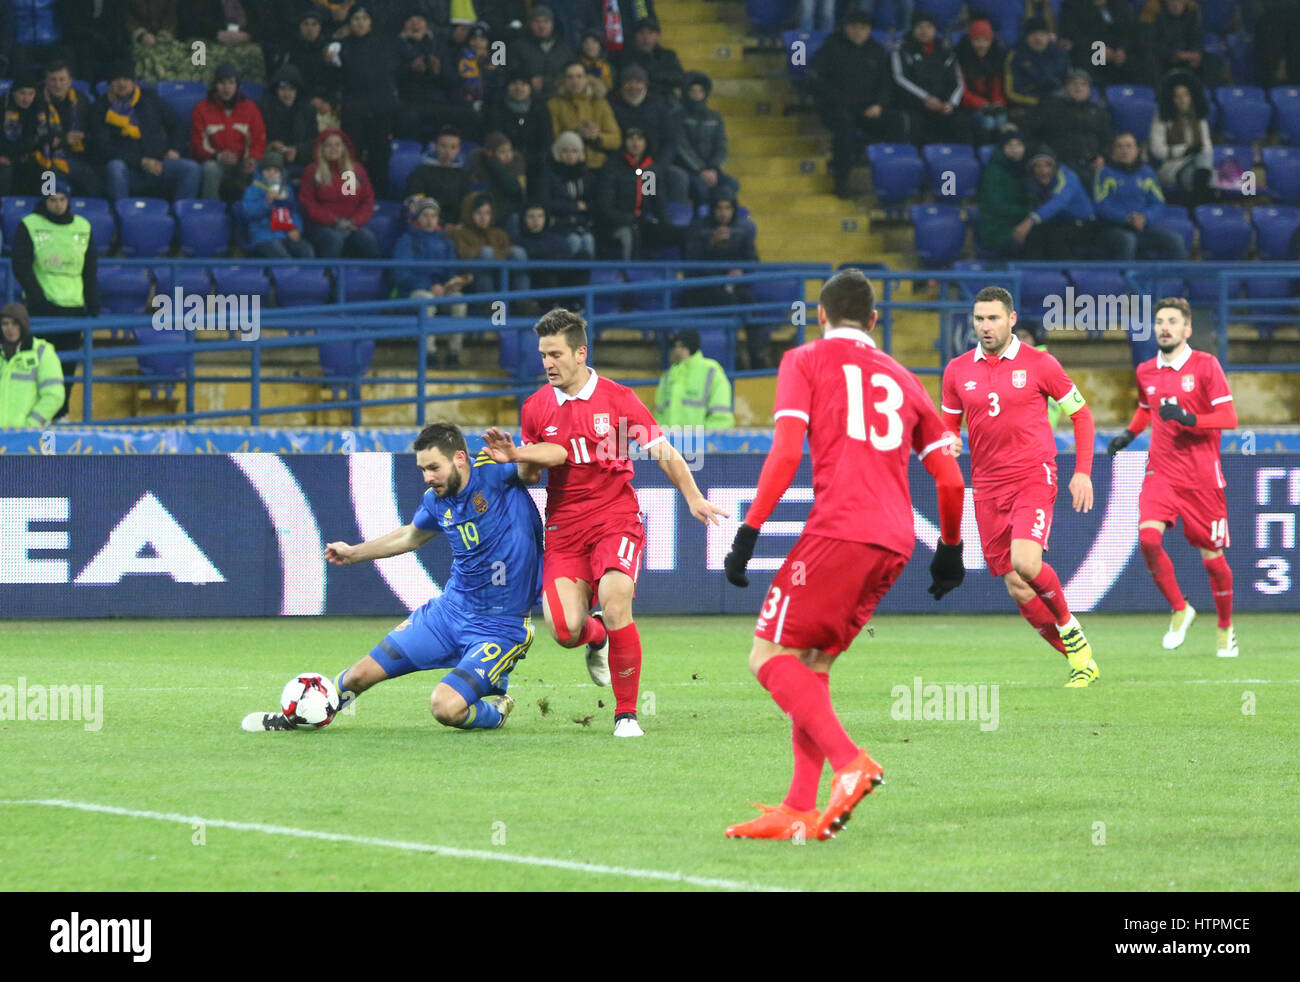 Kharkiv, Ucraina - 15 Novembre 2016: i giocatori di Ucraina squadra nazionale (in blu) lotta per una sfera con giocatori serbo (in rosso) durante il loro cordiale Foto Stock